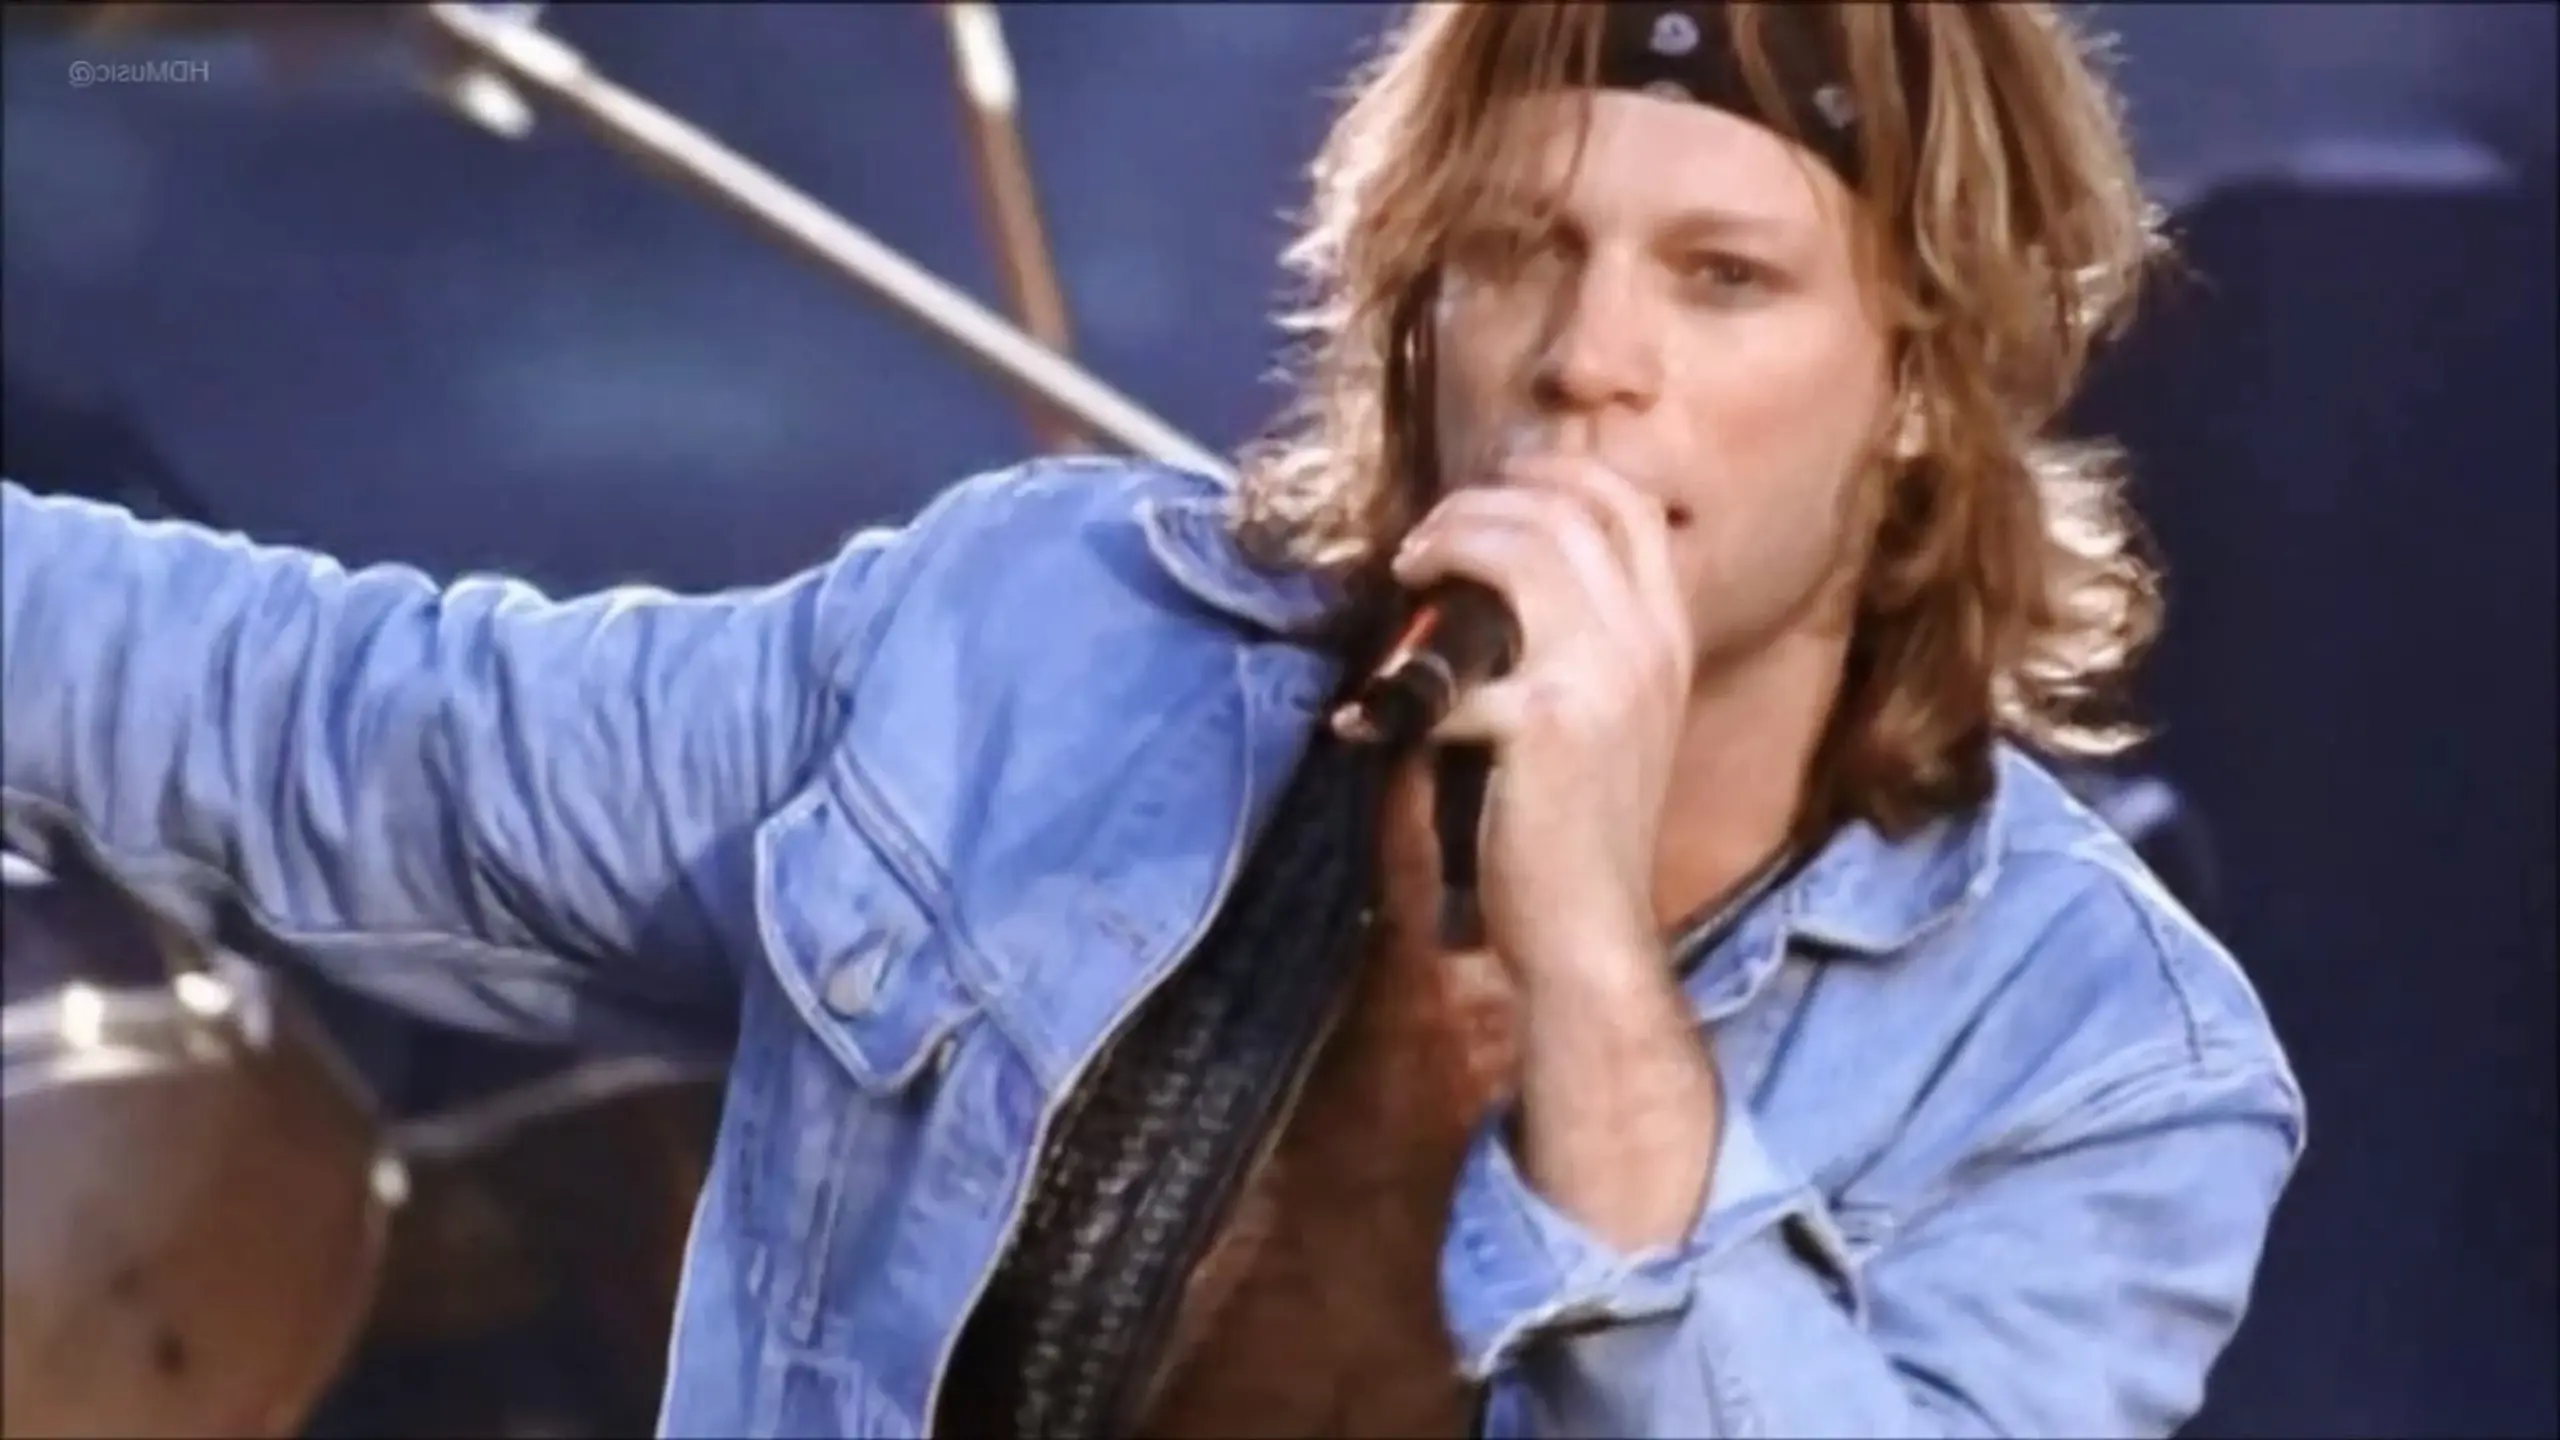 Bon Jovi: Live from London